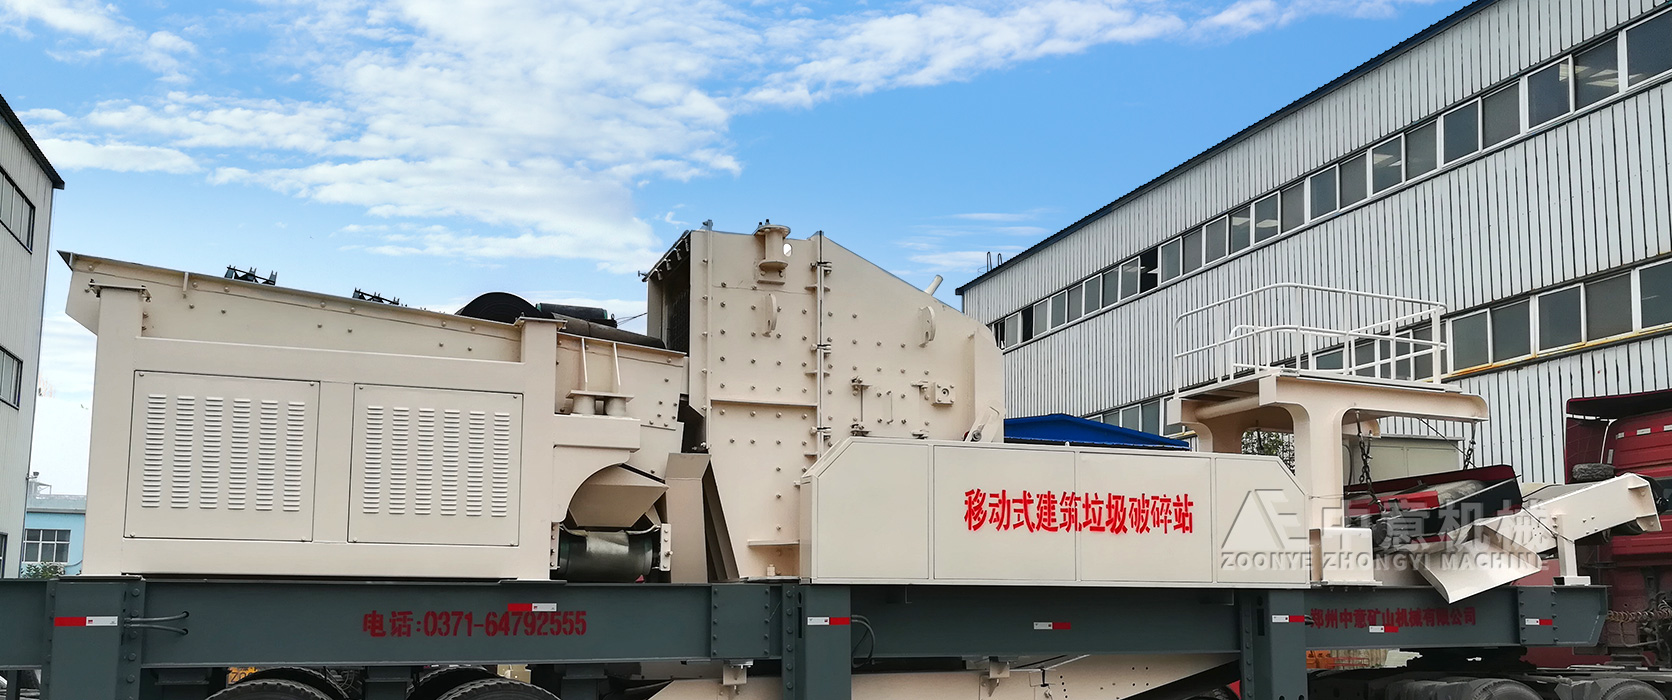 中意矿机销往杭州的建筑垃圾处理设备发货现场